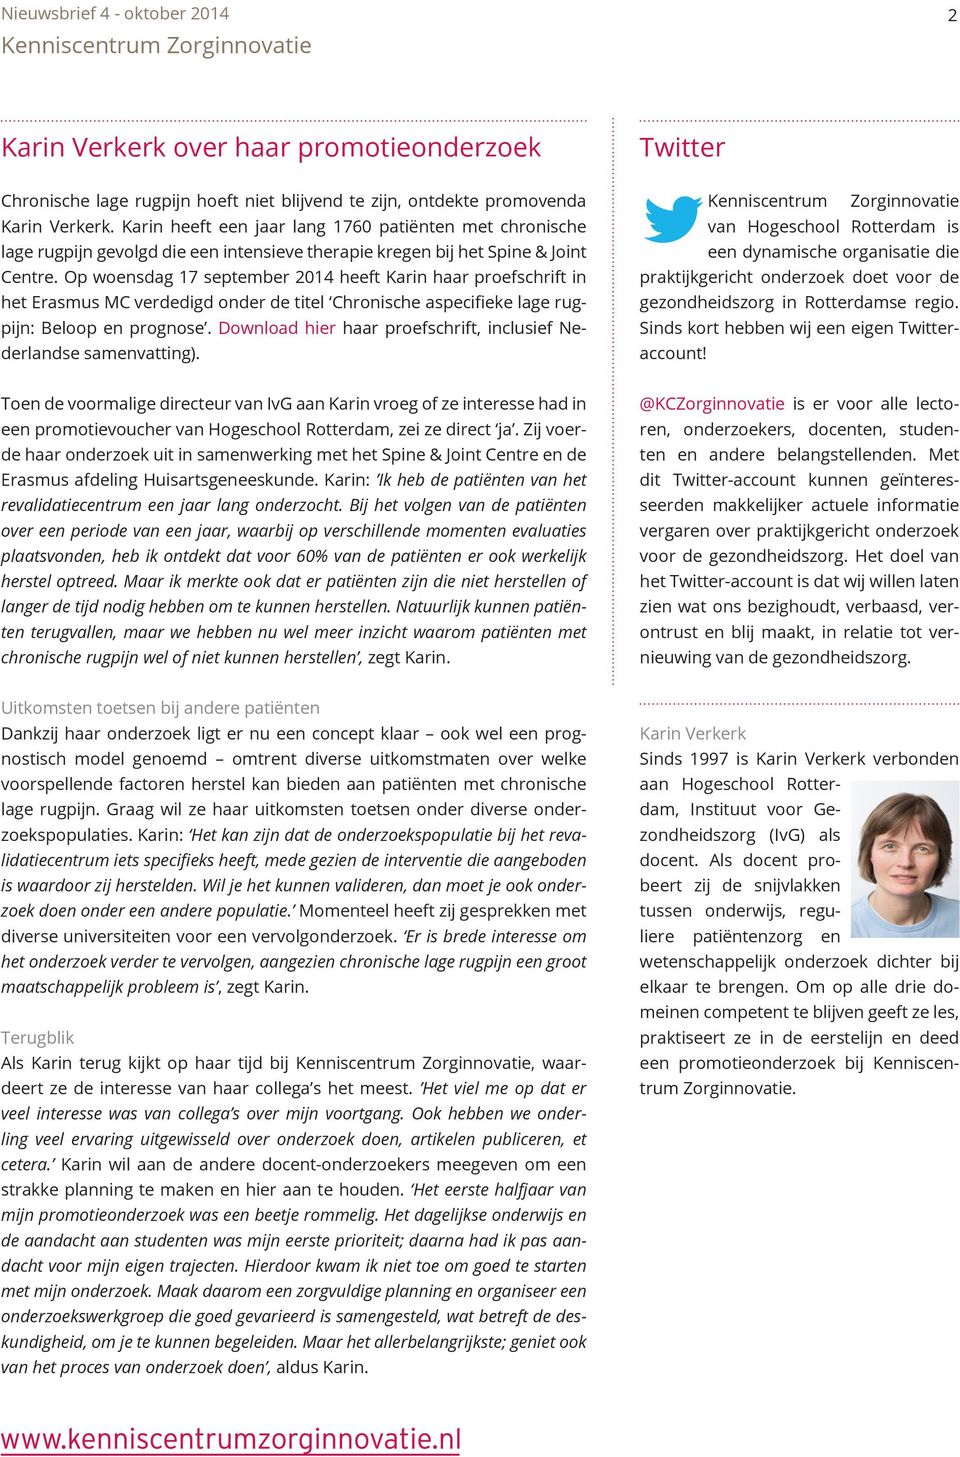 Op woensdag 17 september 2014 heeft Karin haar proefschrift in het Erasmus MC verdedigd onder de titel Chronische aspecifieke lage rugpijn: Beloop en prognose.